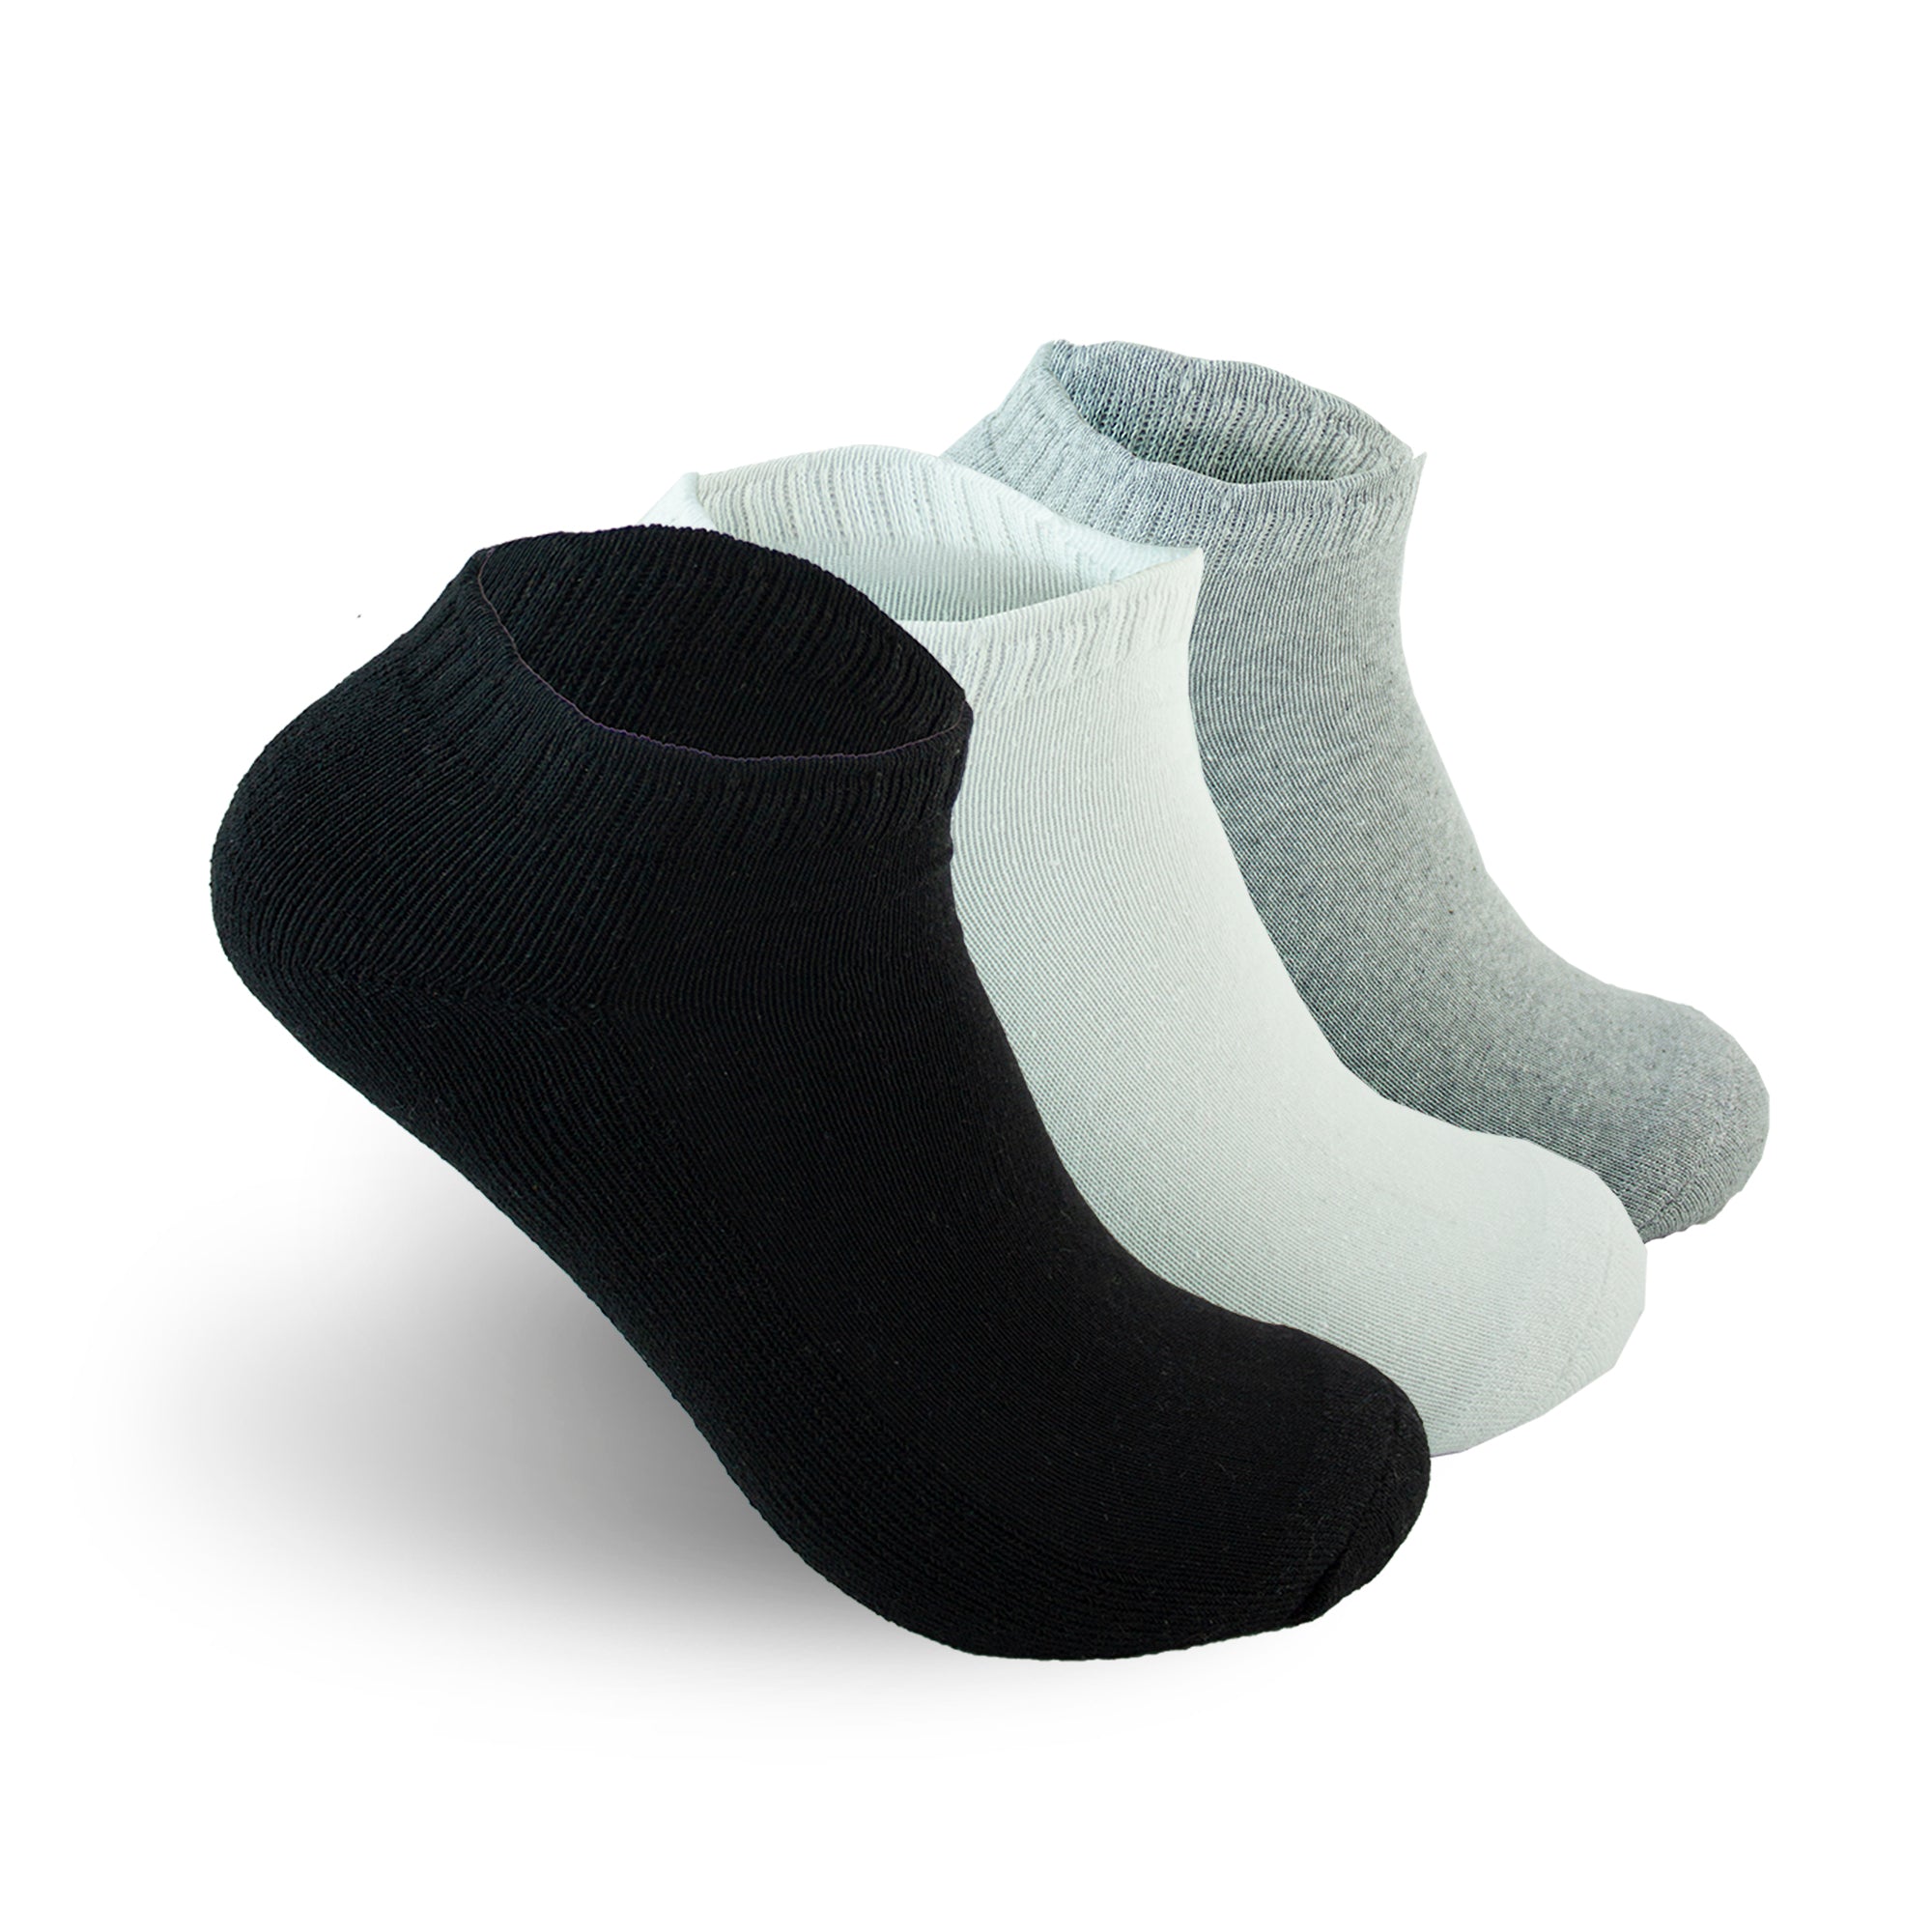 Pack de 3 pares de calcetines largos con motivo manga Color Blanco - CROPP  - 5700N-00X